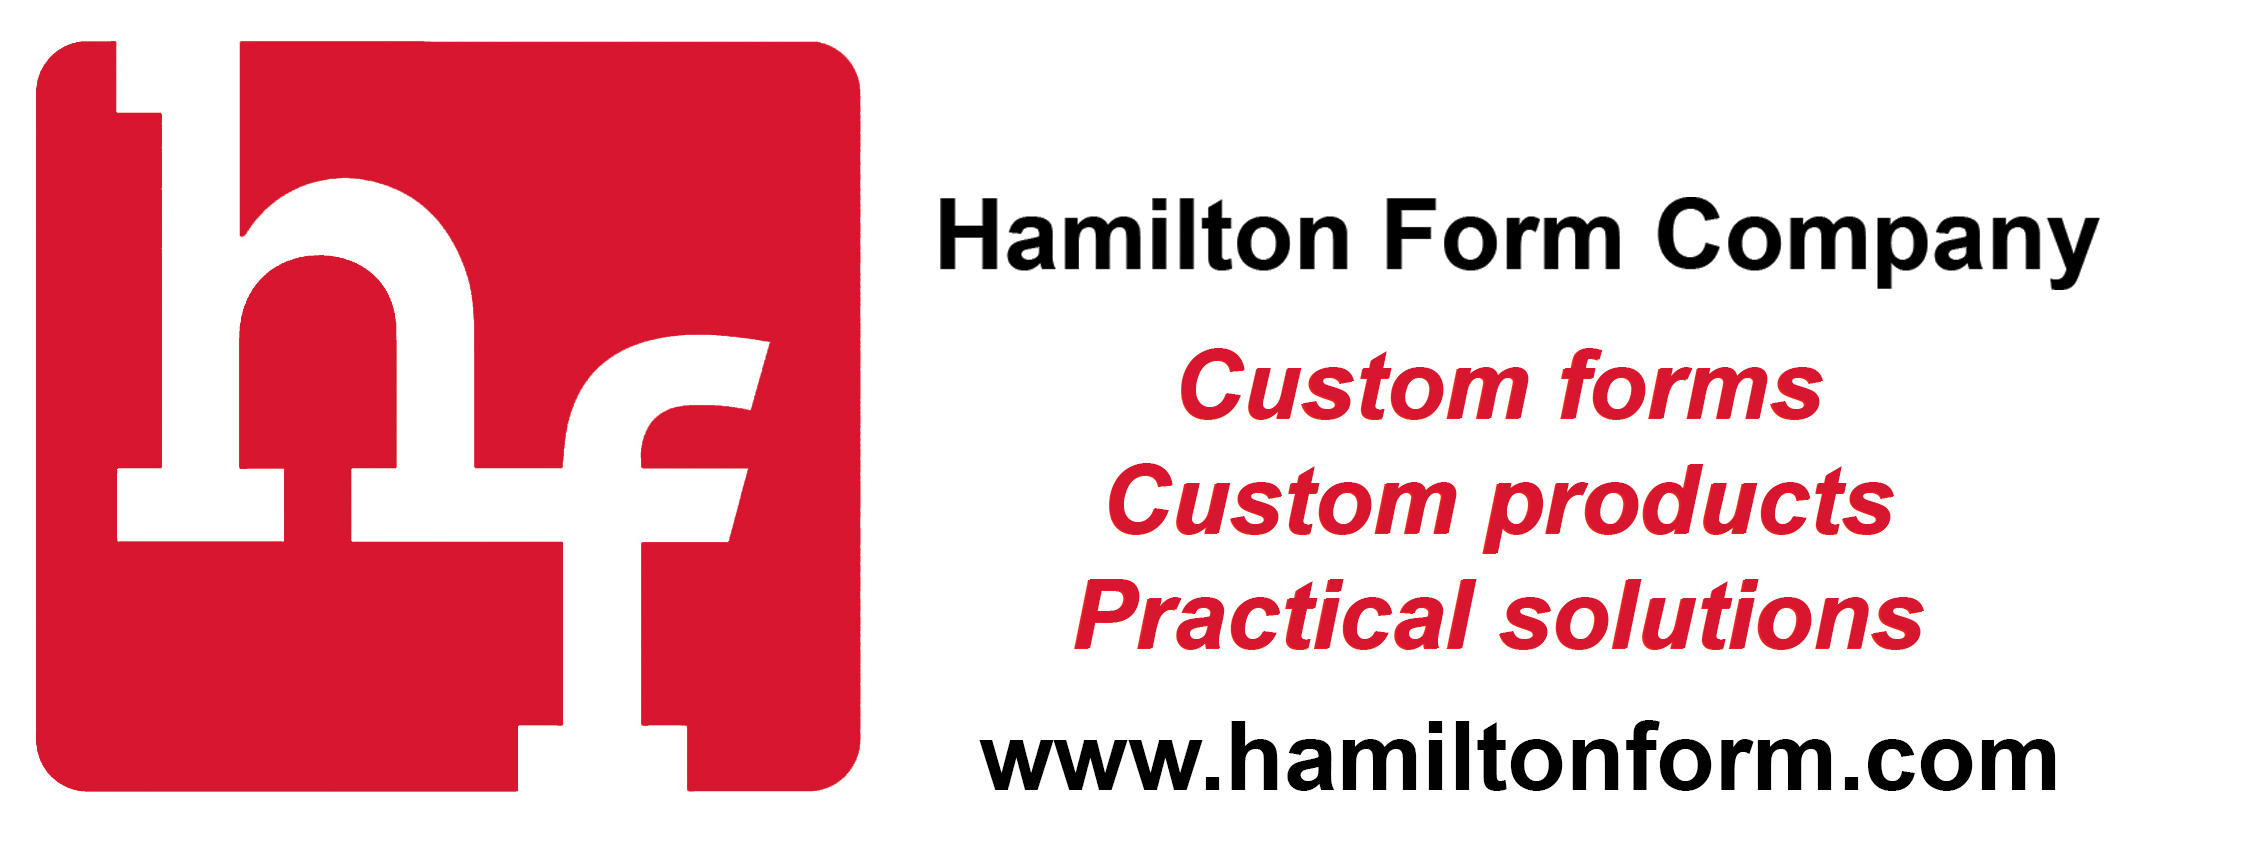 Hamilton Form Company